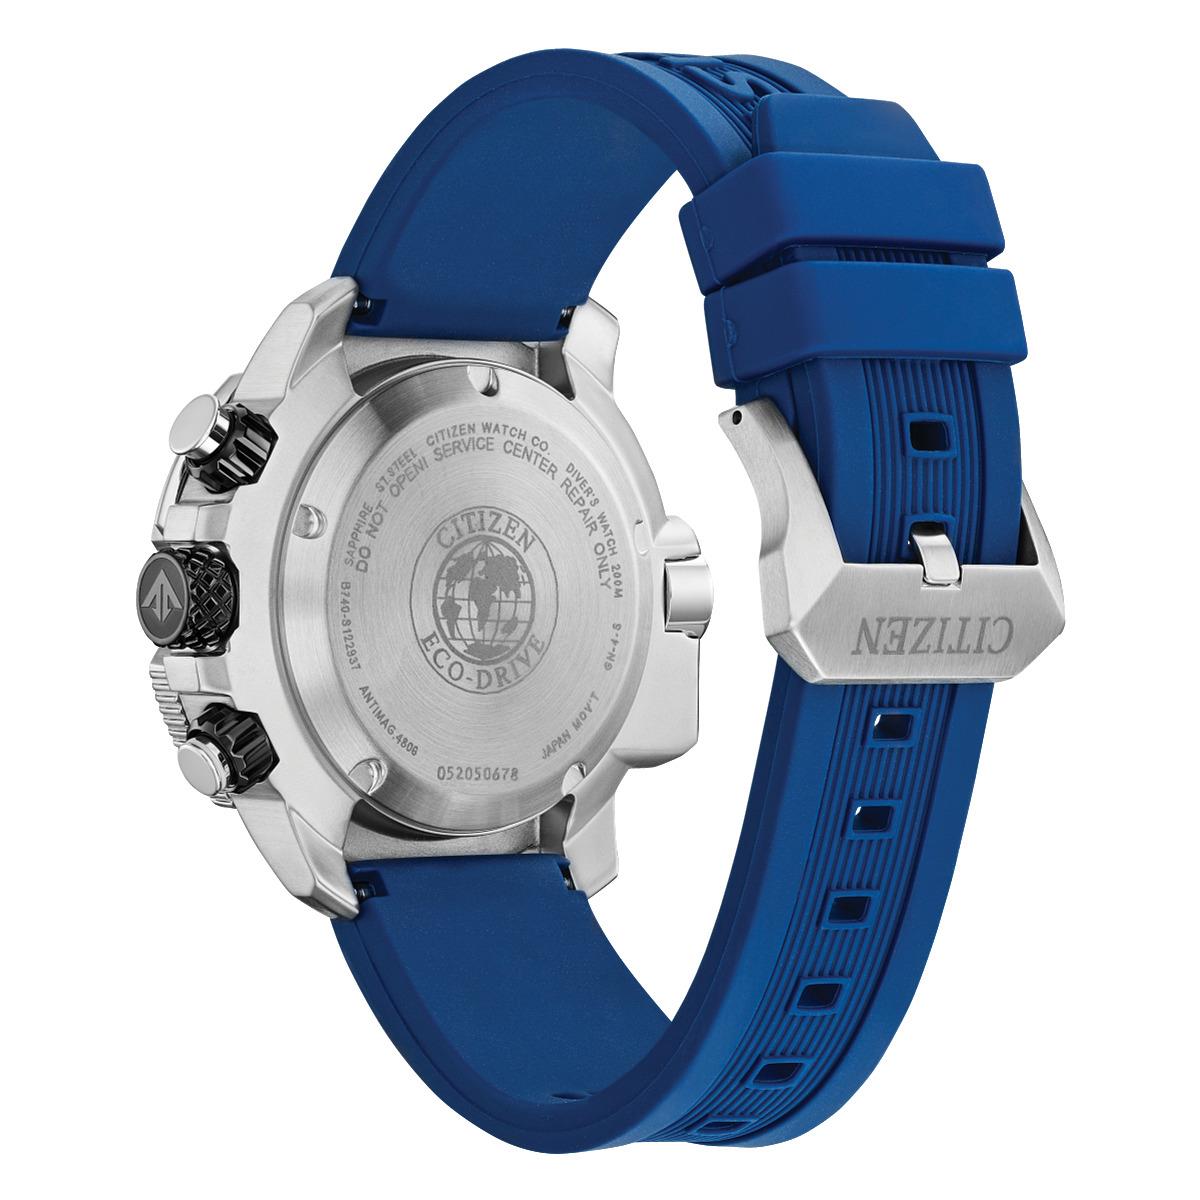 Citizen Eco-drive Men`s Promaster Aqualand Blue Rubber Strap Watch BJ2169-88E - Dial: Black, Band: Blue, Bezel: Blue